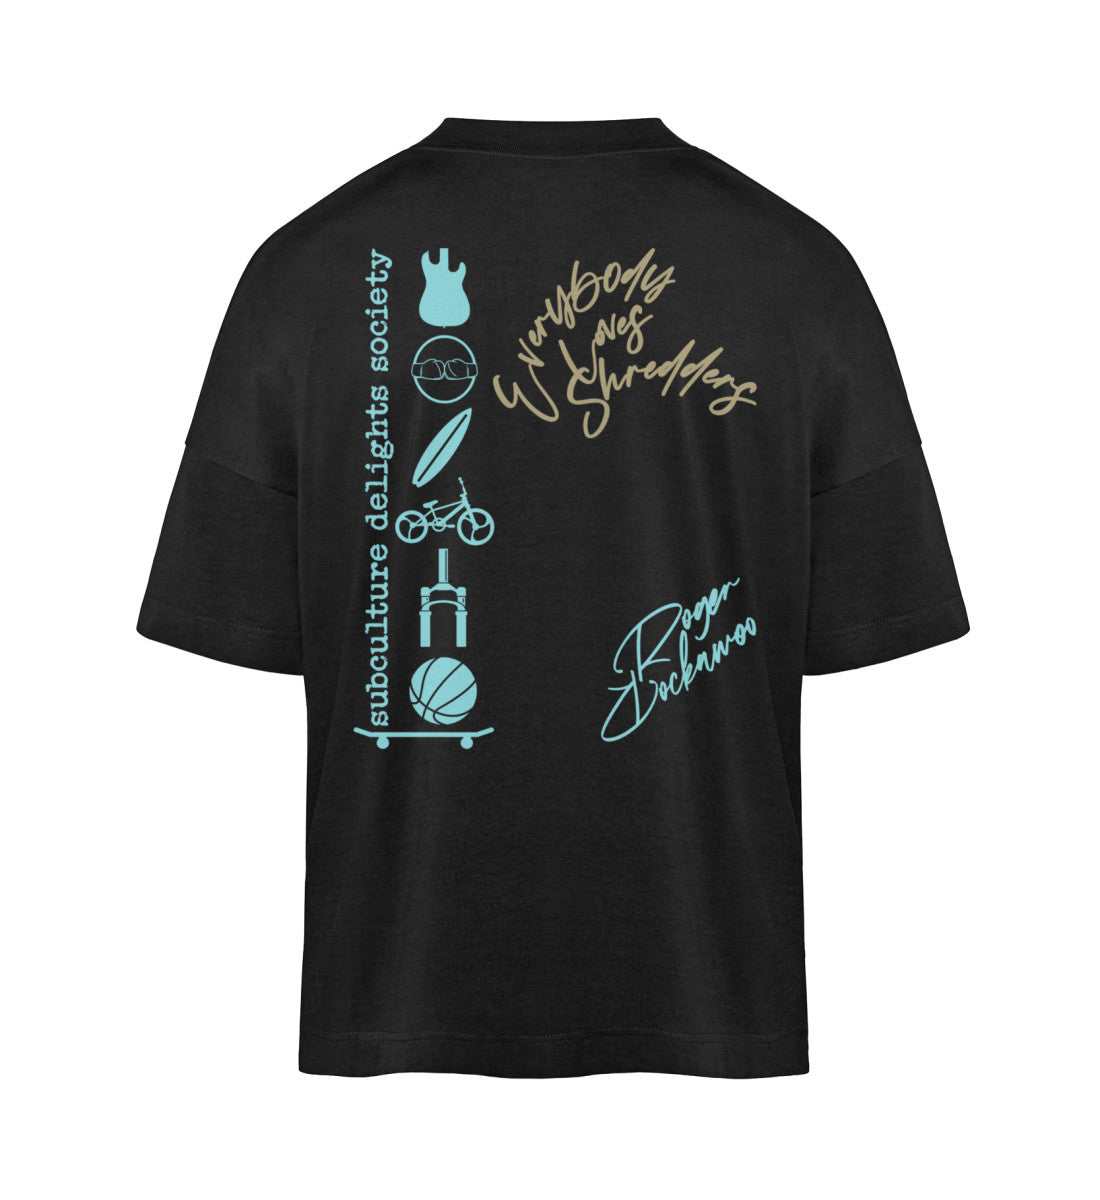 Schwarzes T-Shirt Unisex Oversize Fit für Frauen und Männer bedruckt mit dem Design der Roger Rockawoo Clothing Everybody loves Shredder